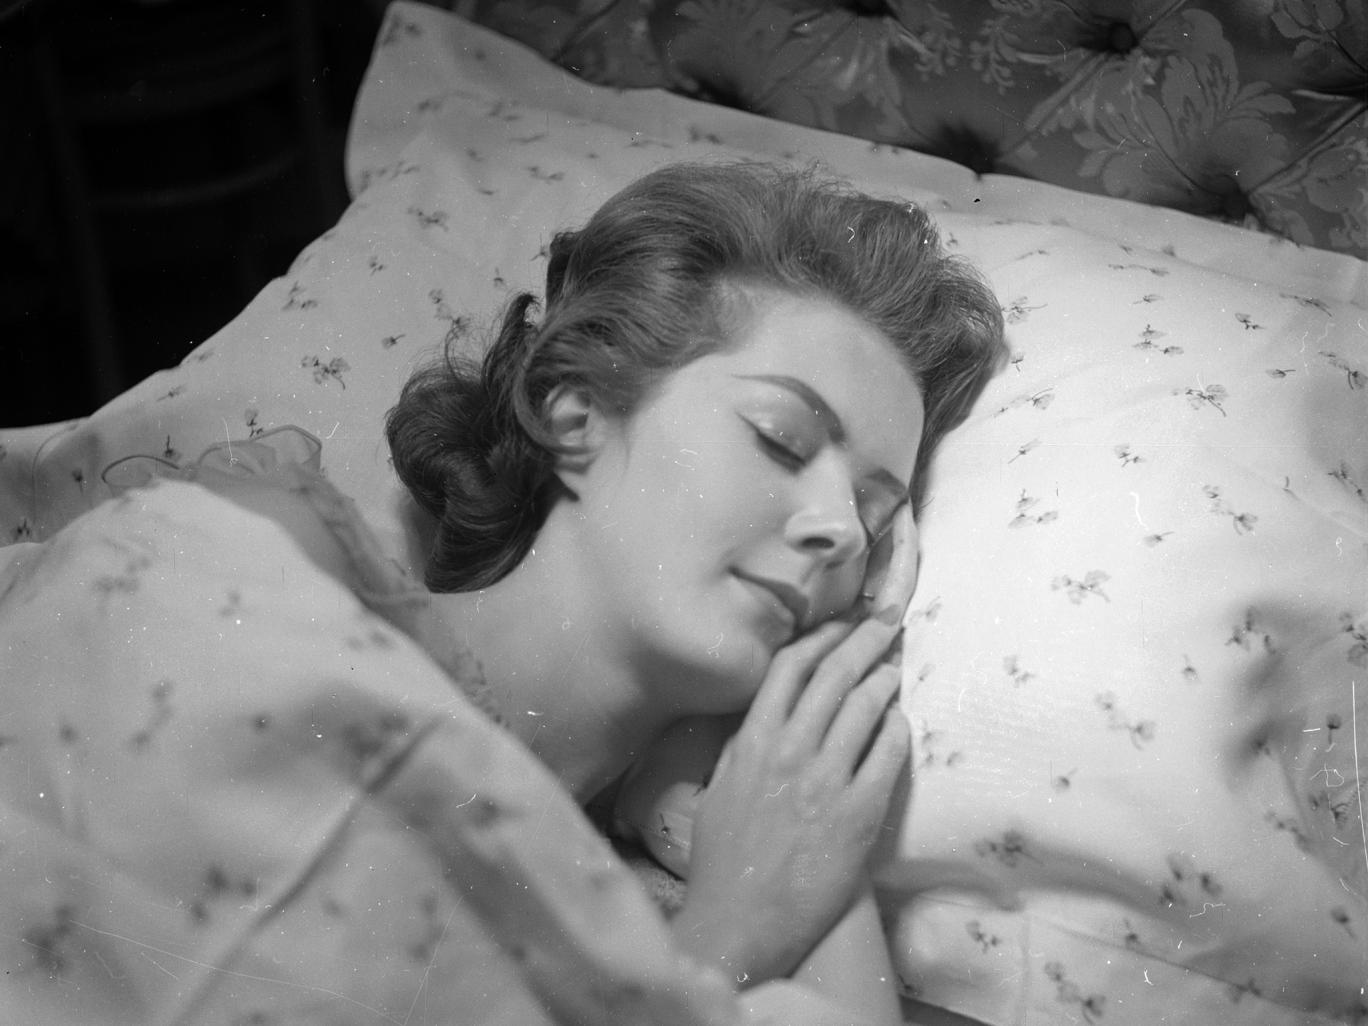 دراسة: العقل المعقد للنساء يحتاج لنوم أطول من الرجال